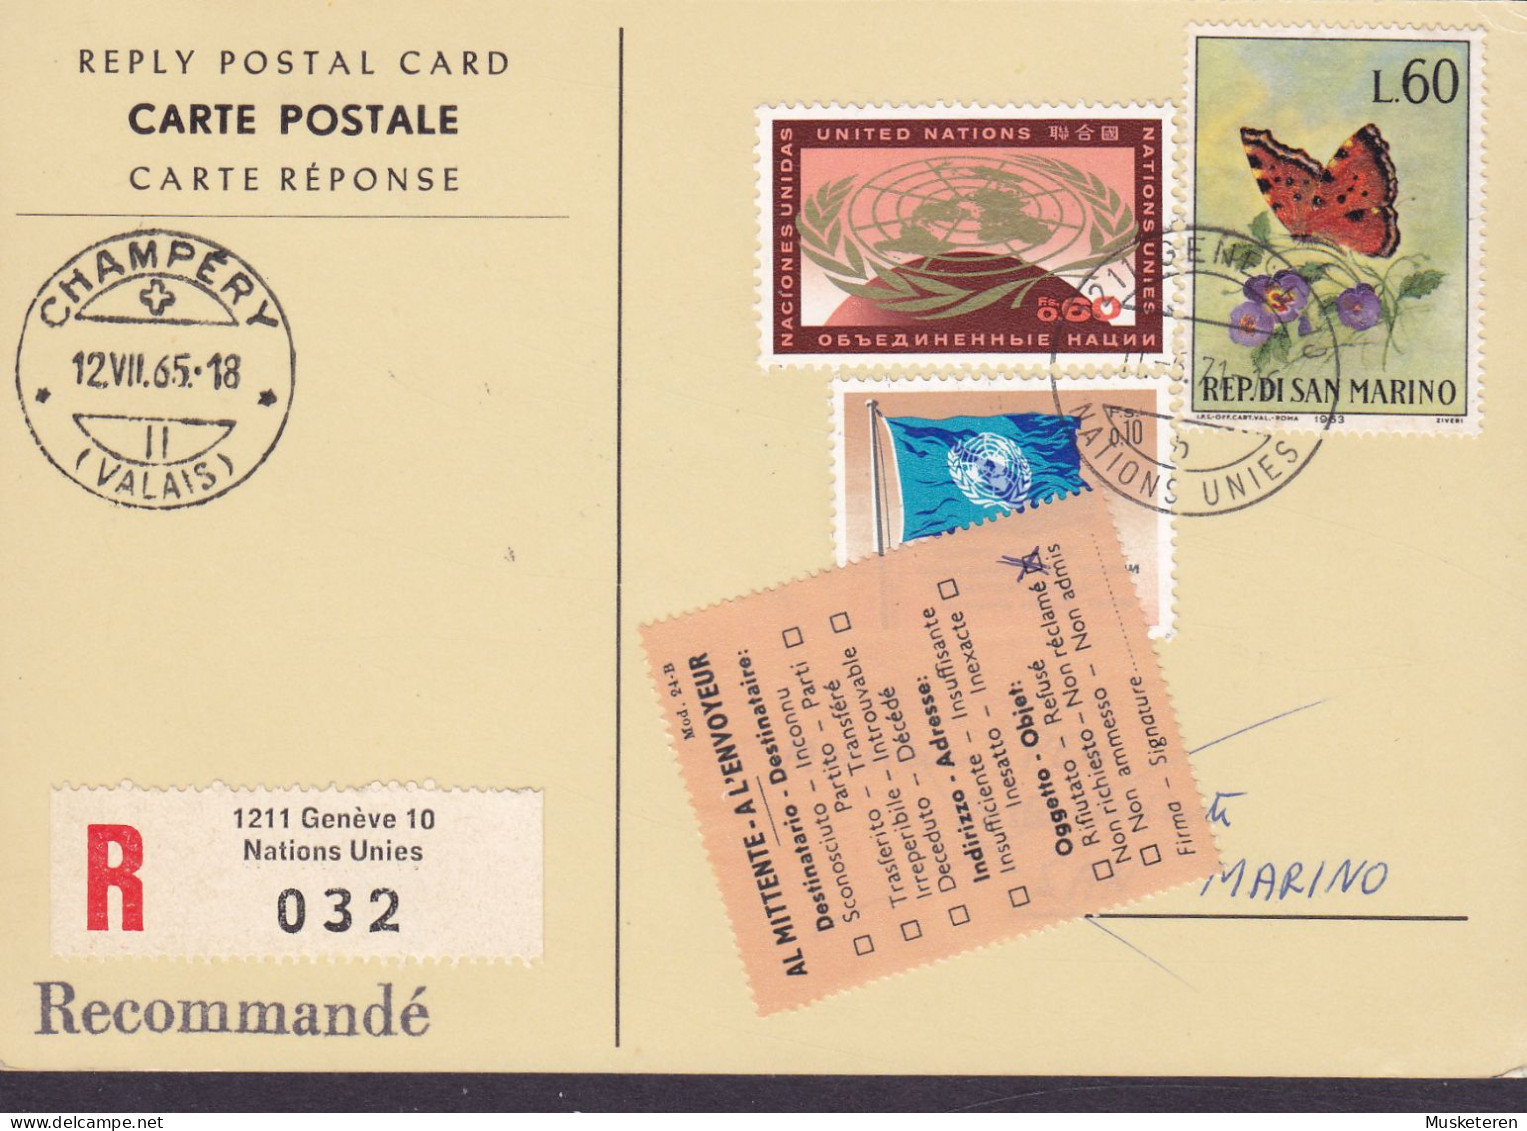 United Nations Reply Postal Card Recommandé Label GENÉVE 1971 SAN MARINO 'Non Réclamé' Vignette Butterfly Papillon - Cartas & Documentos